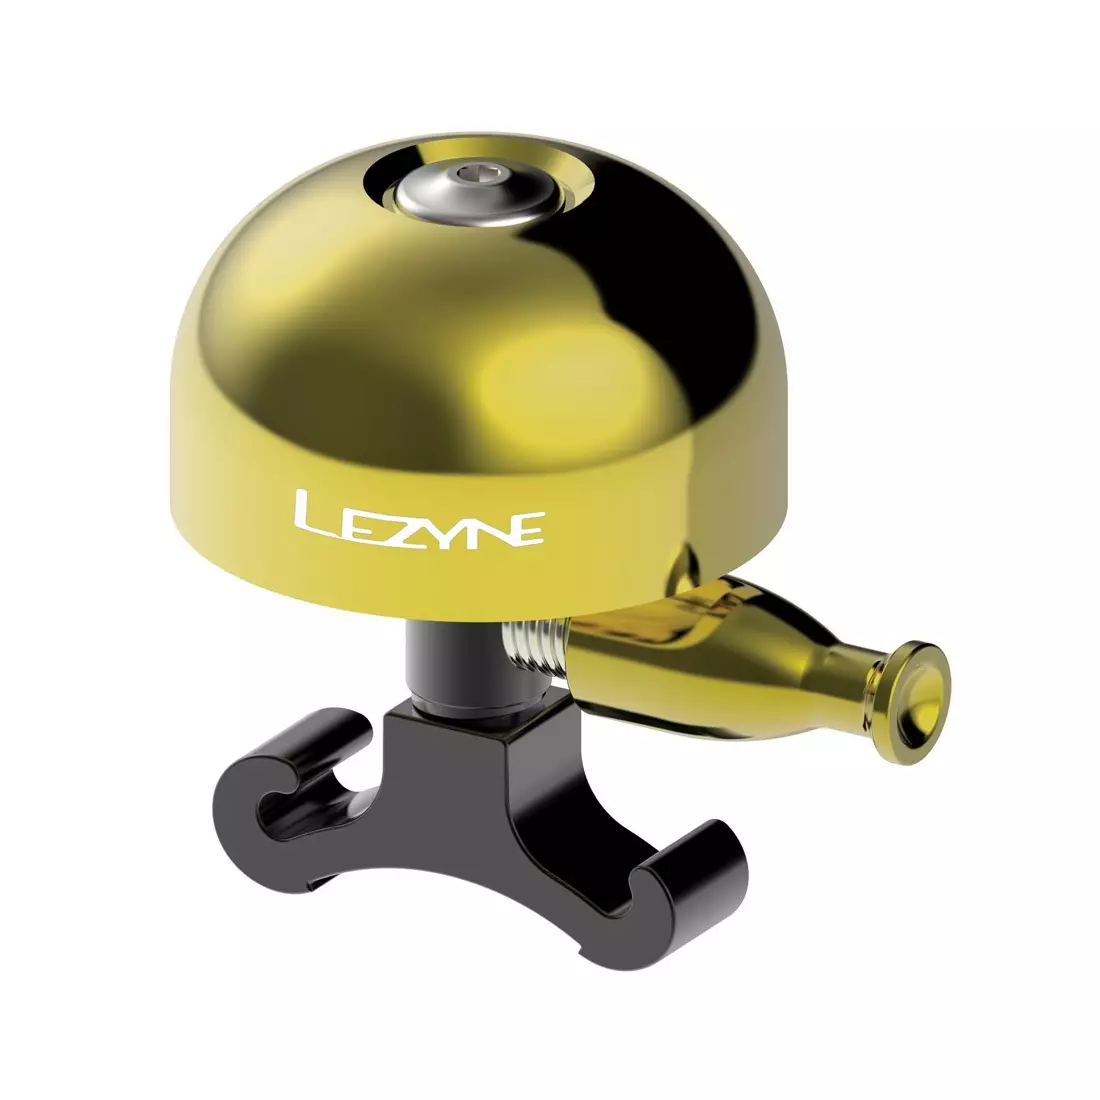 LEZYNE bicycle bell CLASSIC BRASS MEDIUM BELL black brass LZN-1-BL-CLBRS-V104M